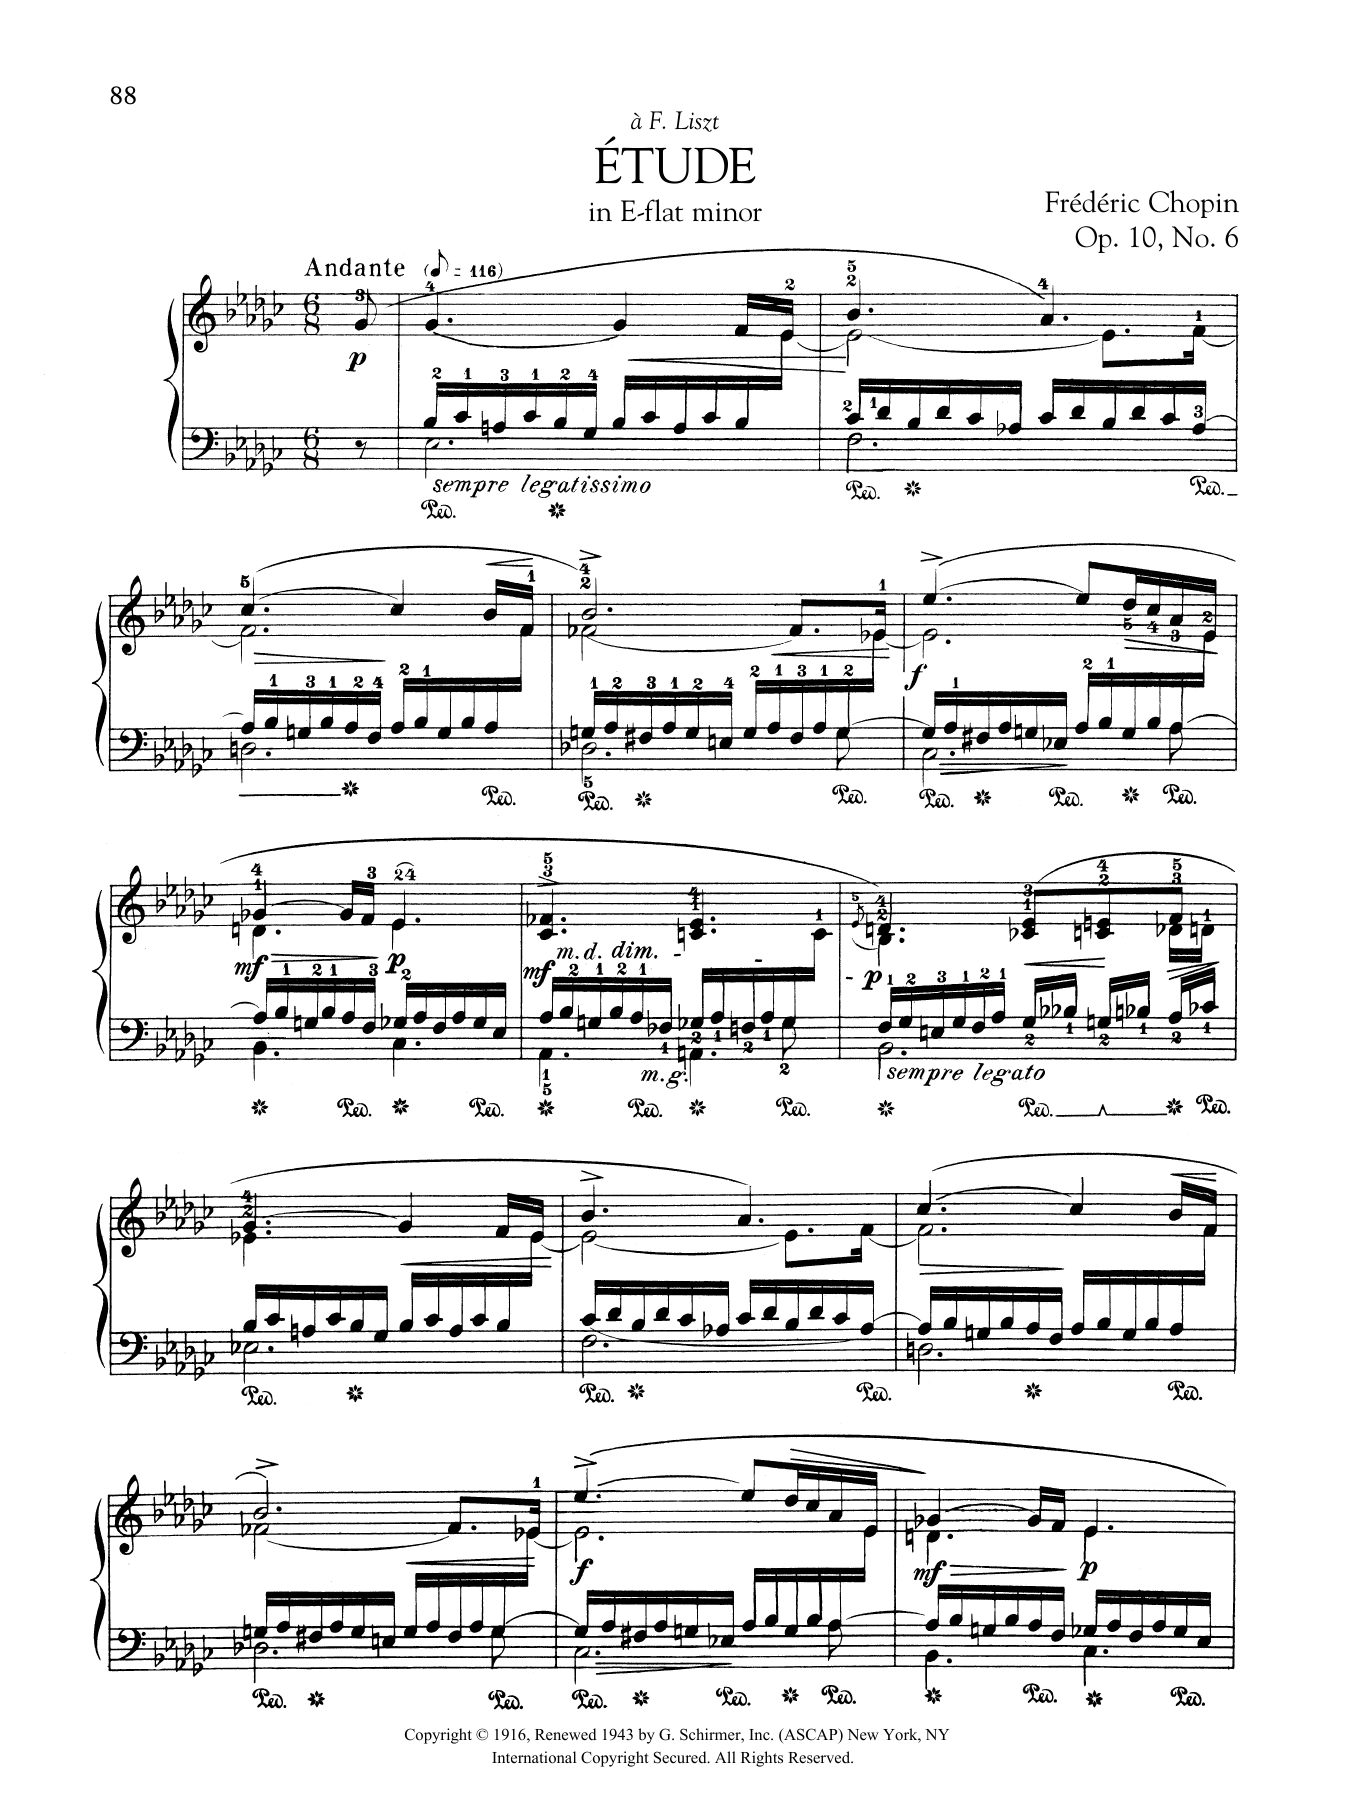 Download Frederic Chopin Etude in E-flat minor, Op. 10, No. 6 Sheet Music